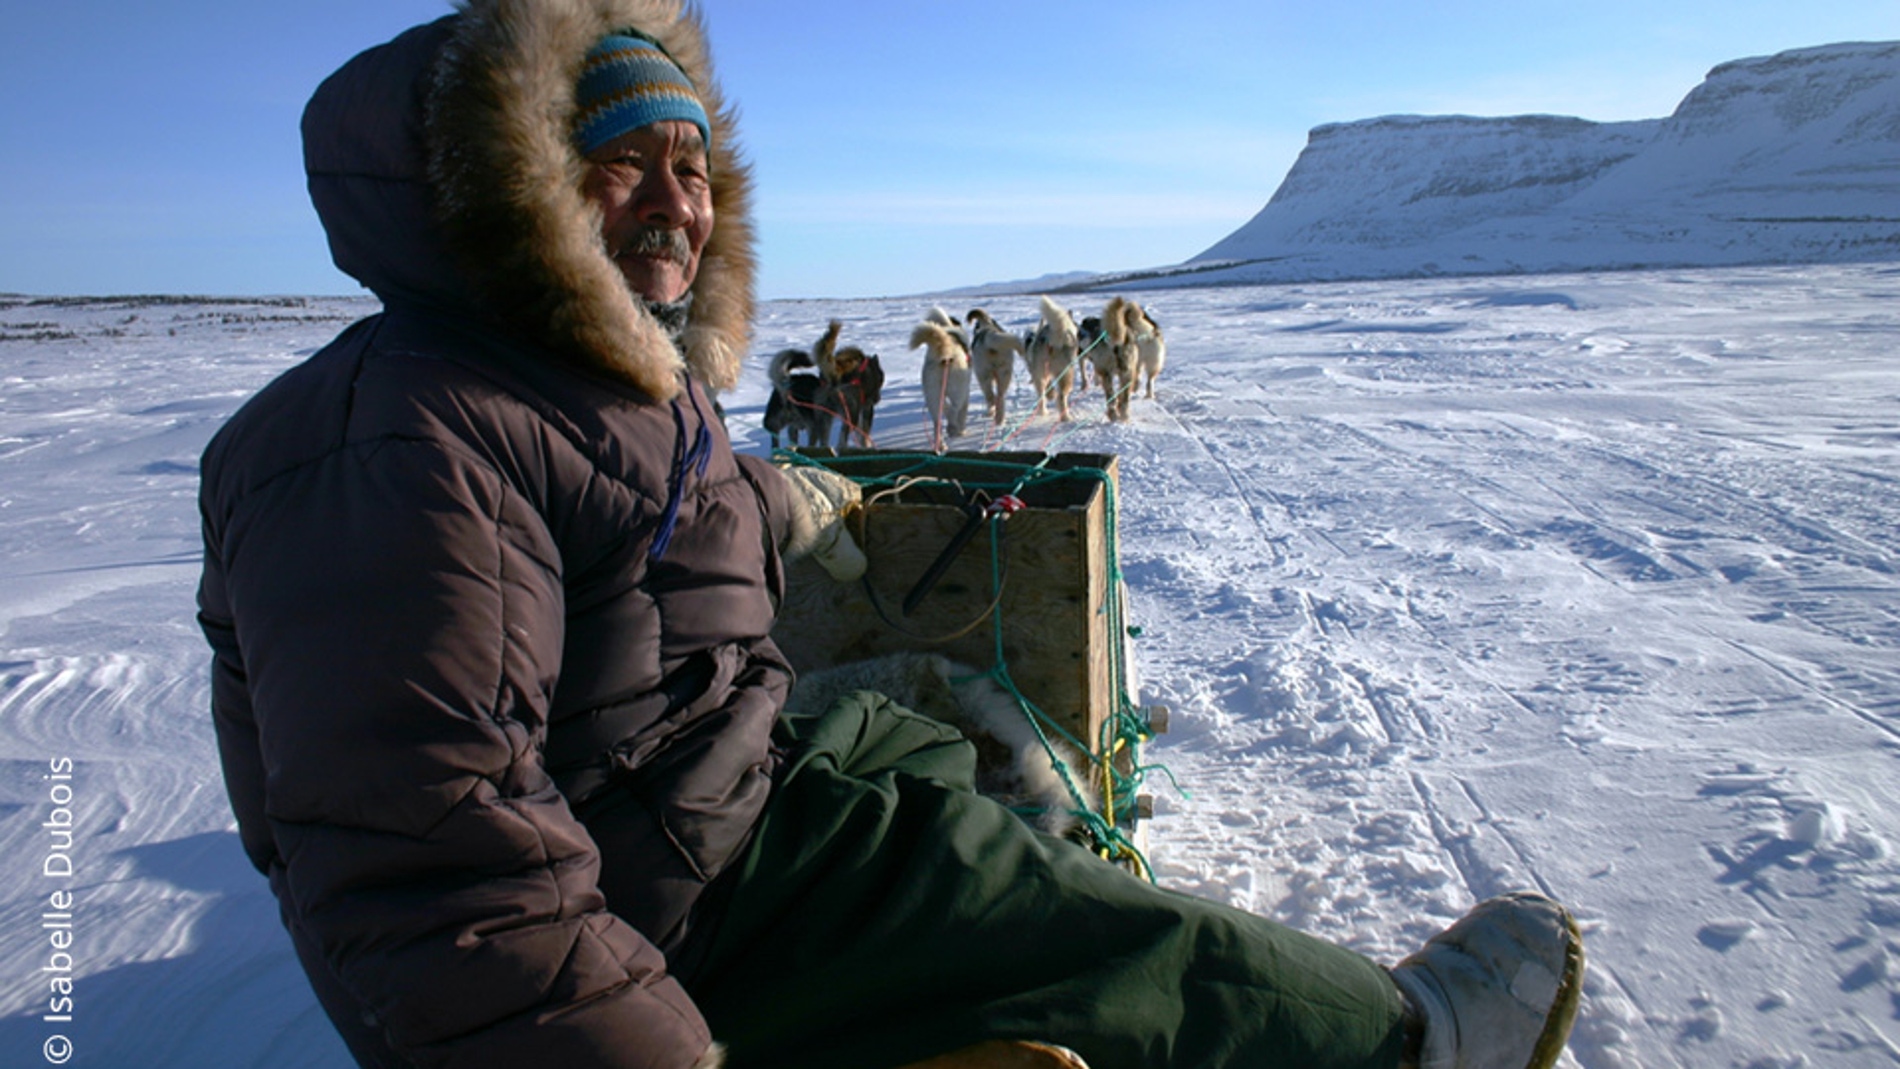 Los inuits de Nunavik son geneticamente unicos en el mundo